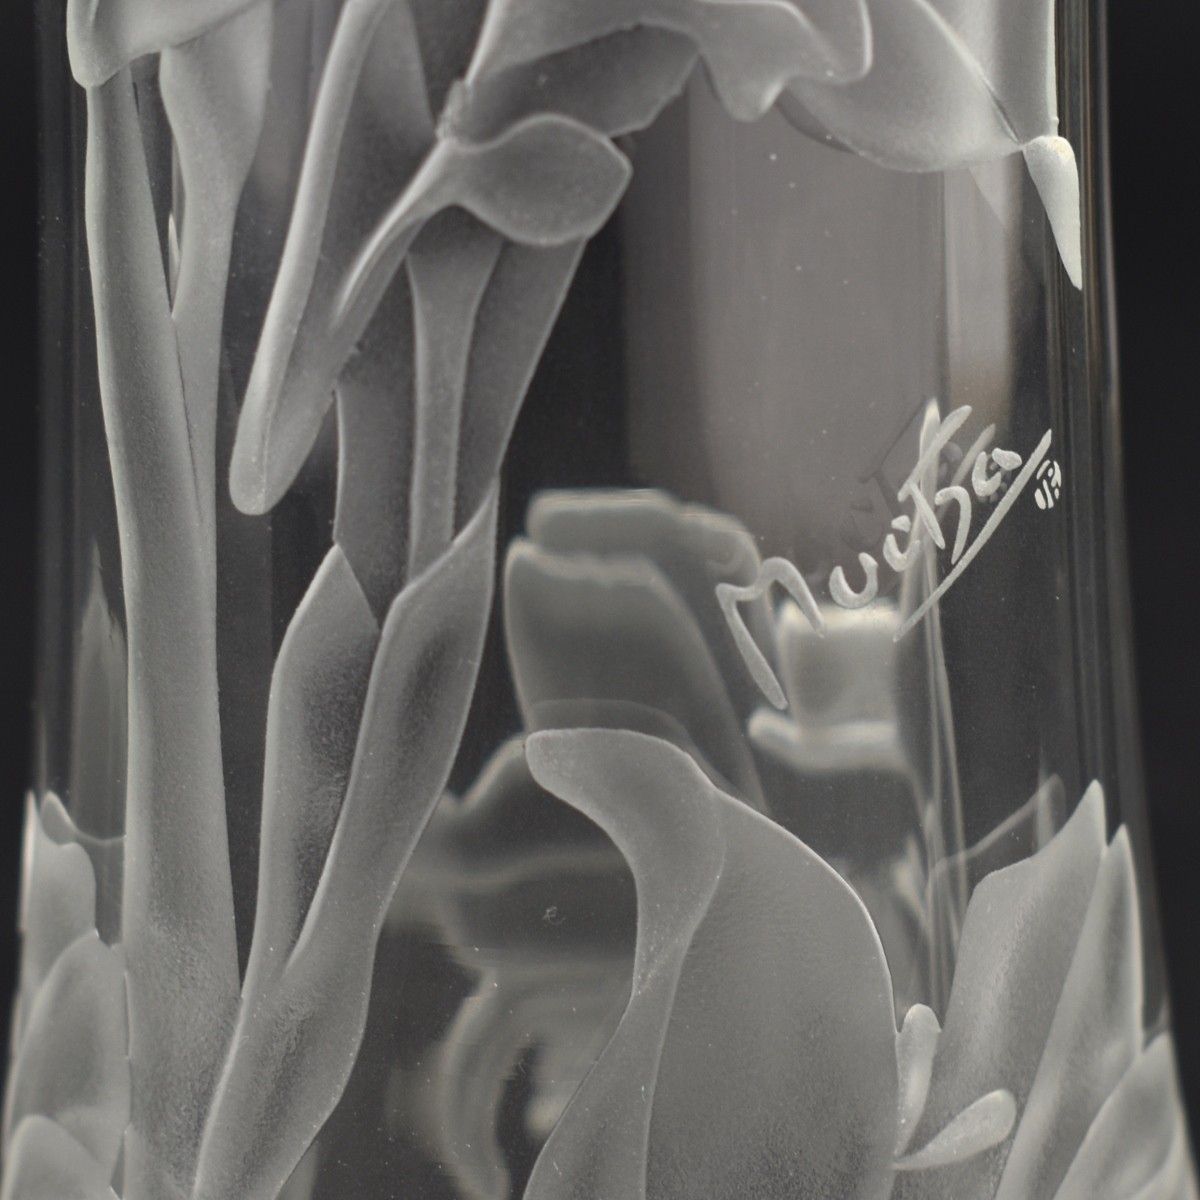 Three (3) Modern Mucha Bohemian Glass Vases